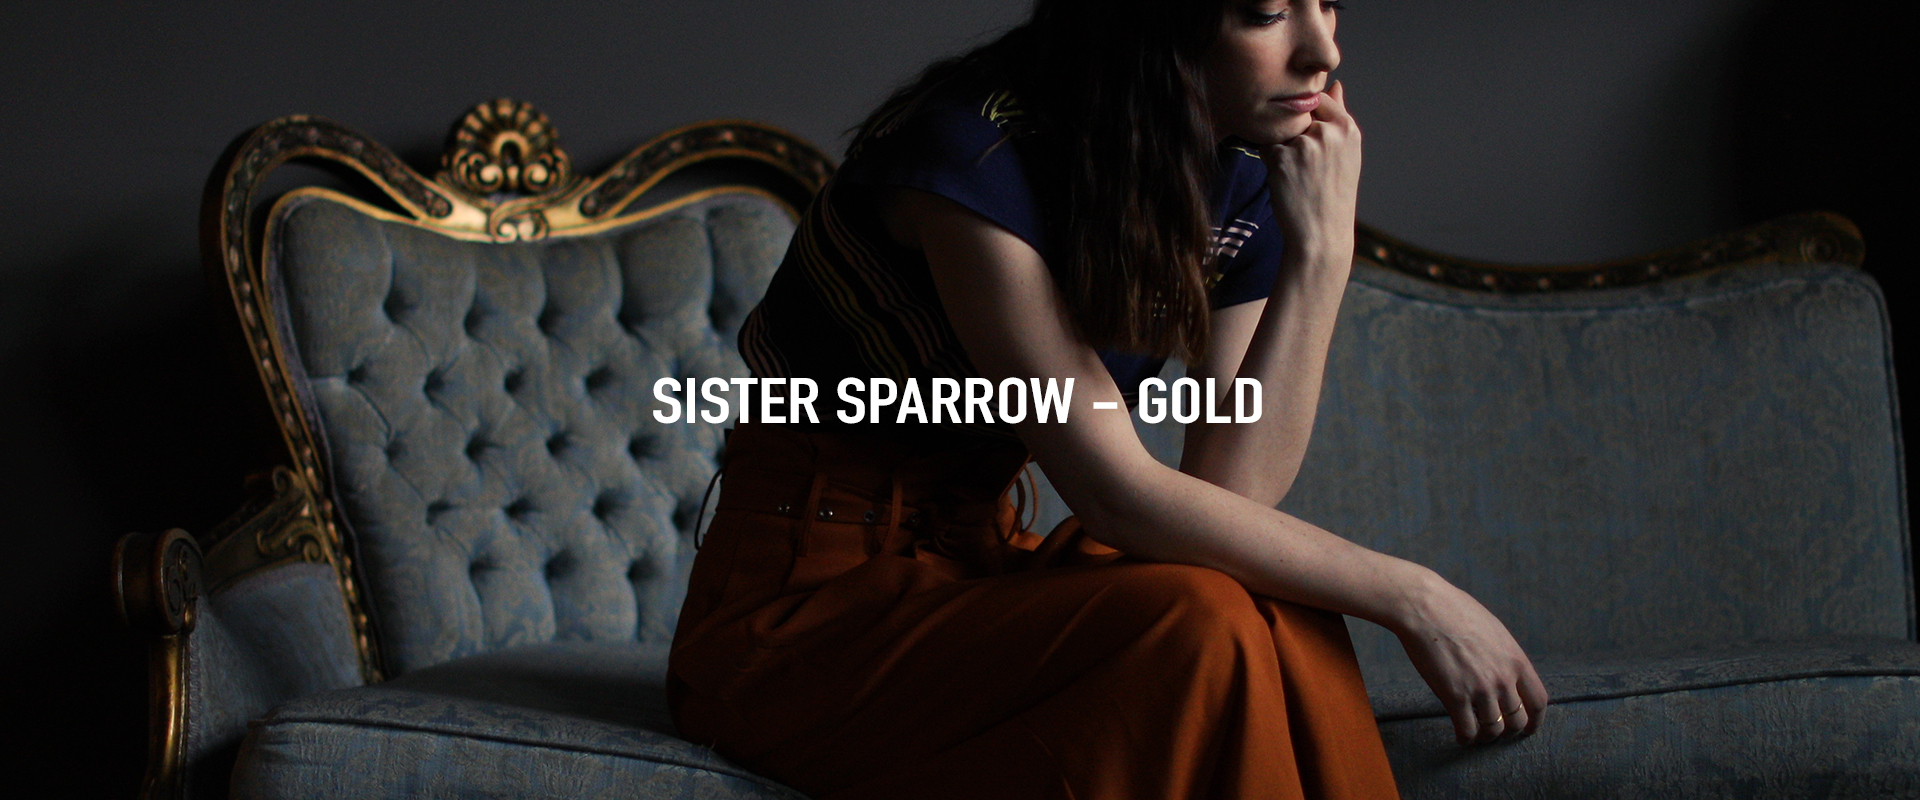 sparrow-gold.jpg